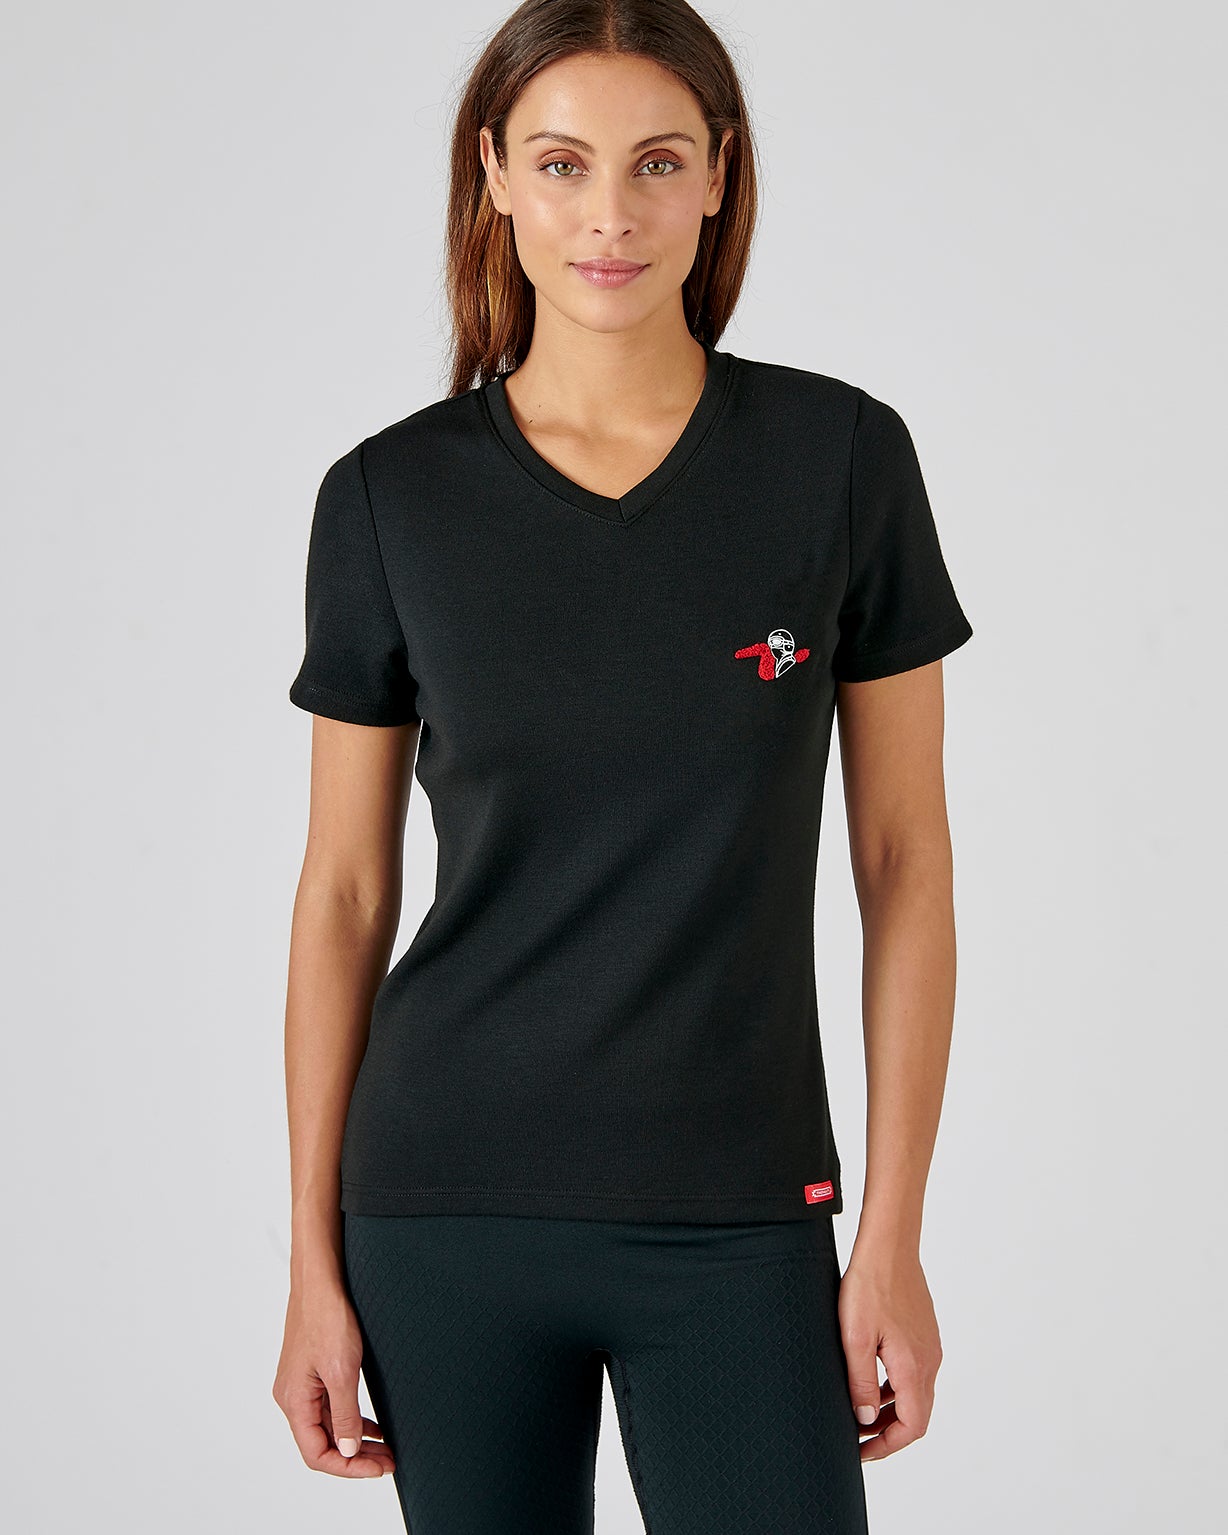 Damart - T-shirt manches courtes avec dentelle Thermolactyl® - Femme -  Grijs - S